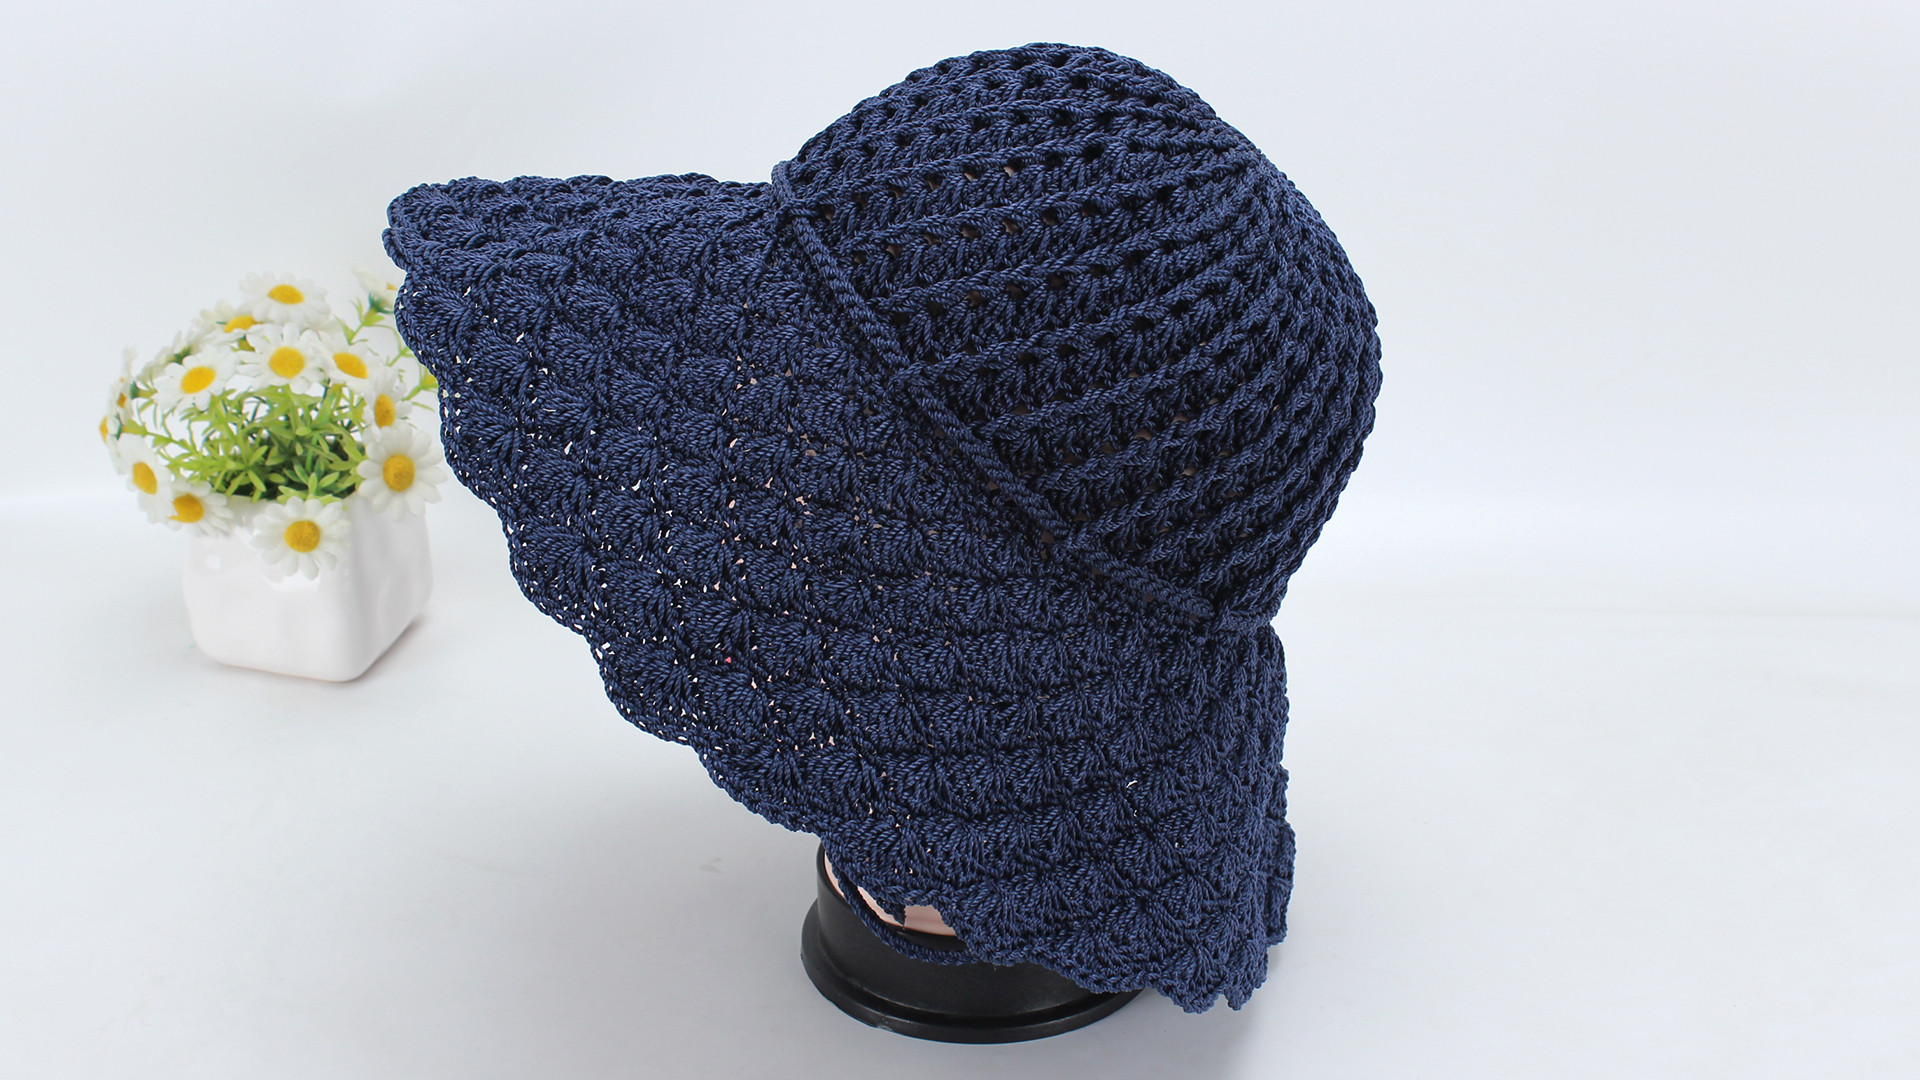 娟娟编织,美丽精致的夏凉帽,防风绳的设计更人性化第二集编织图解